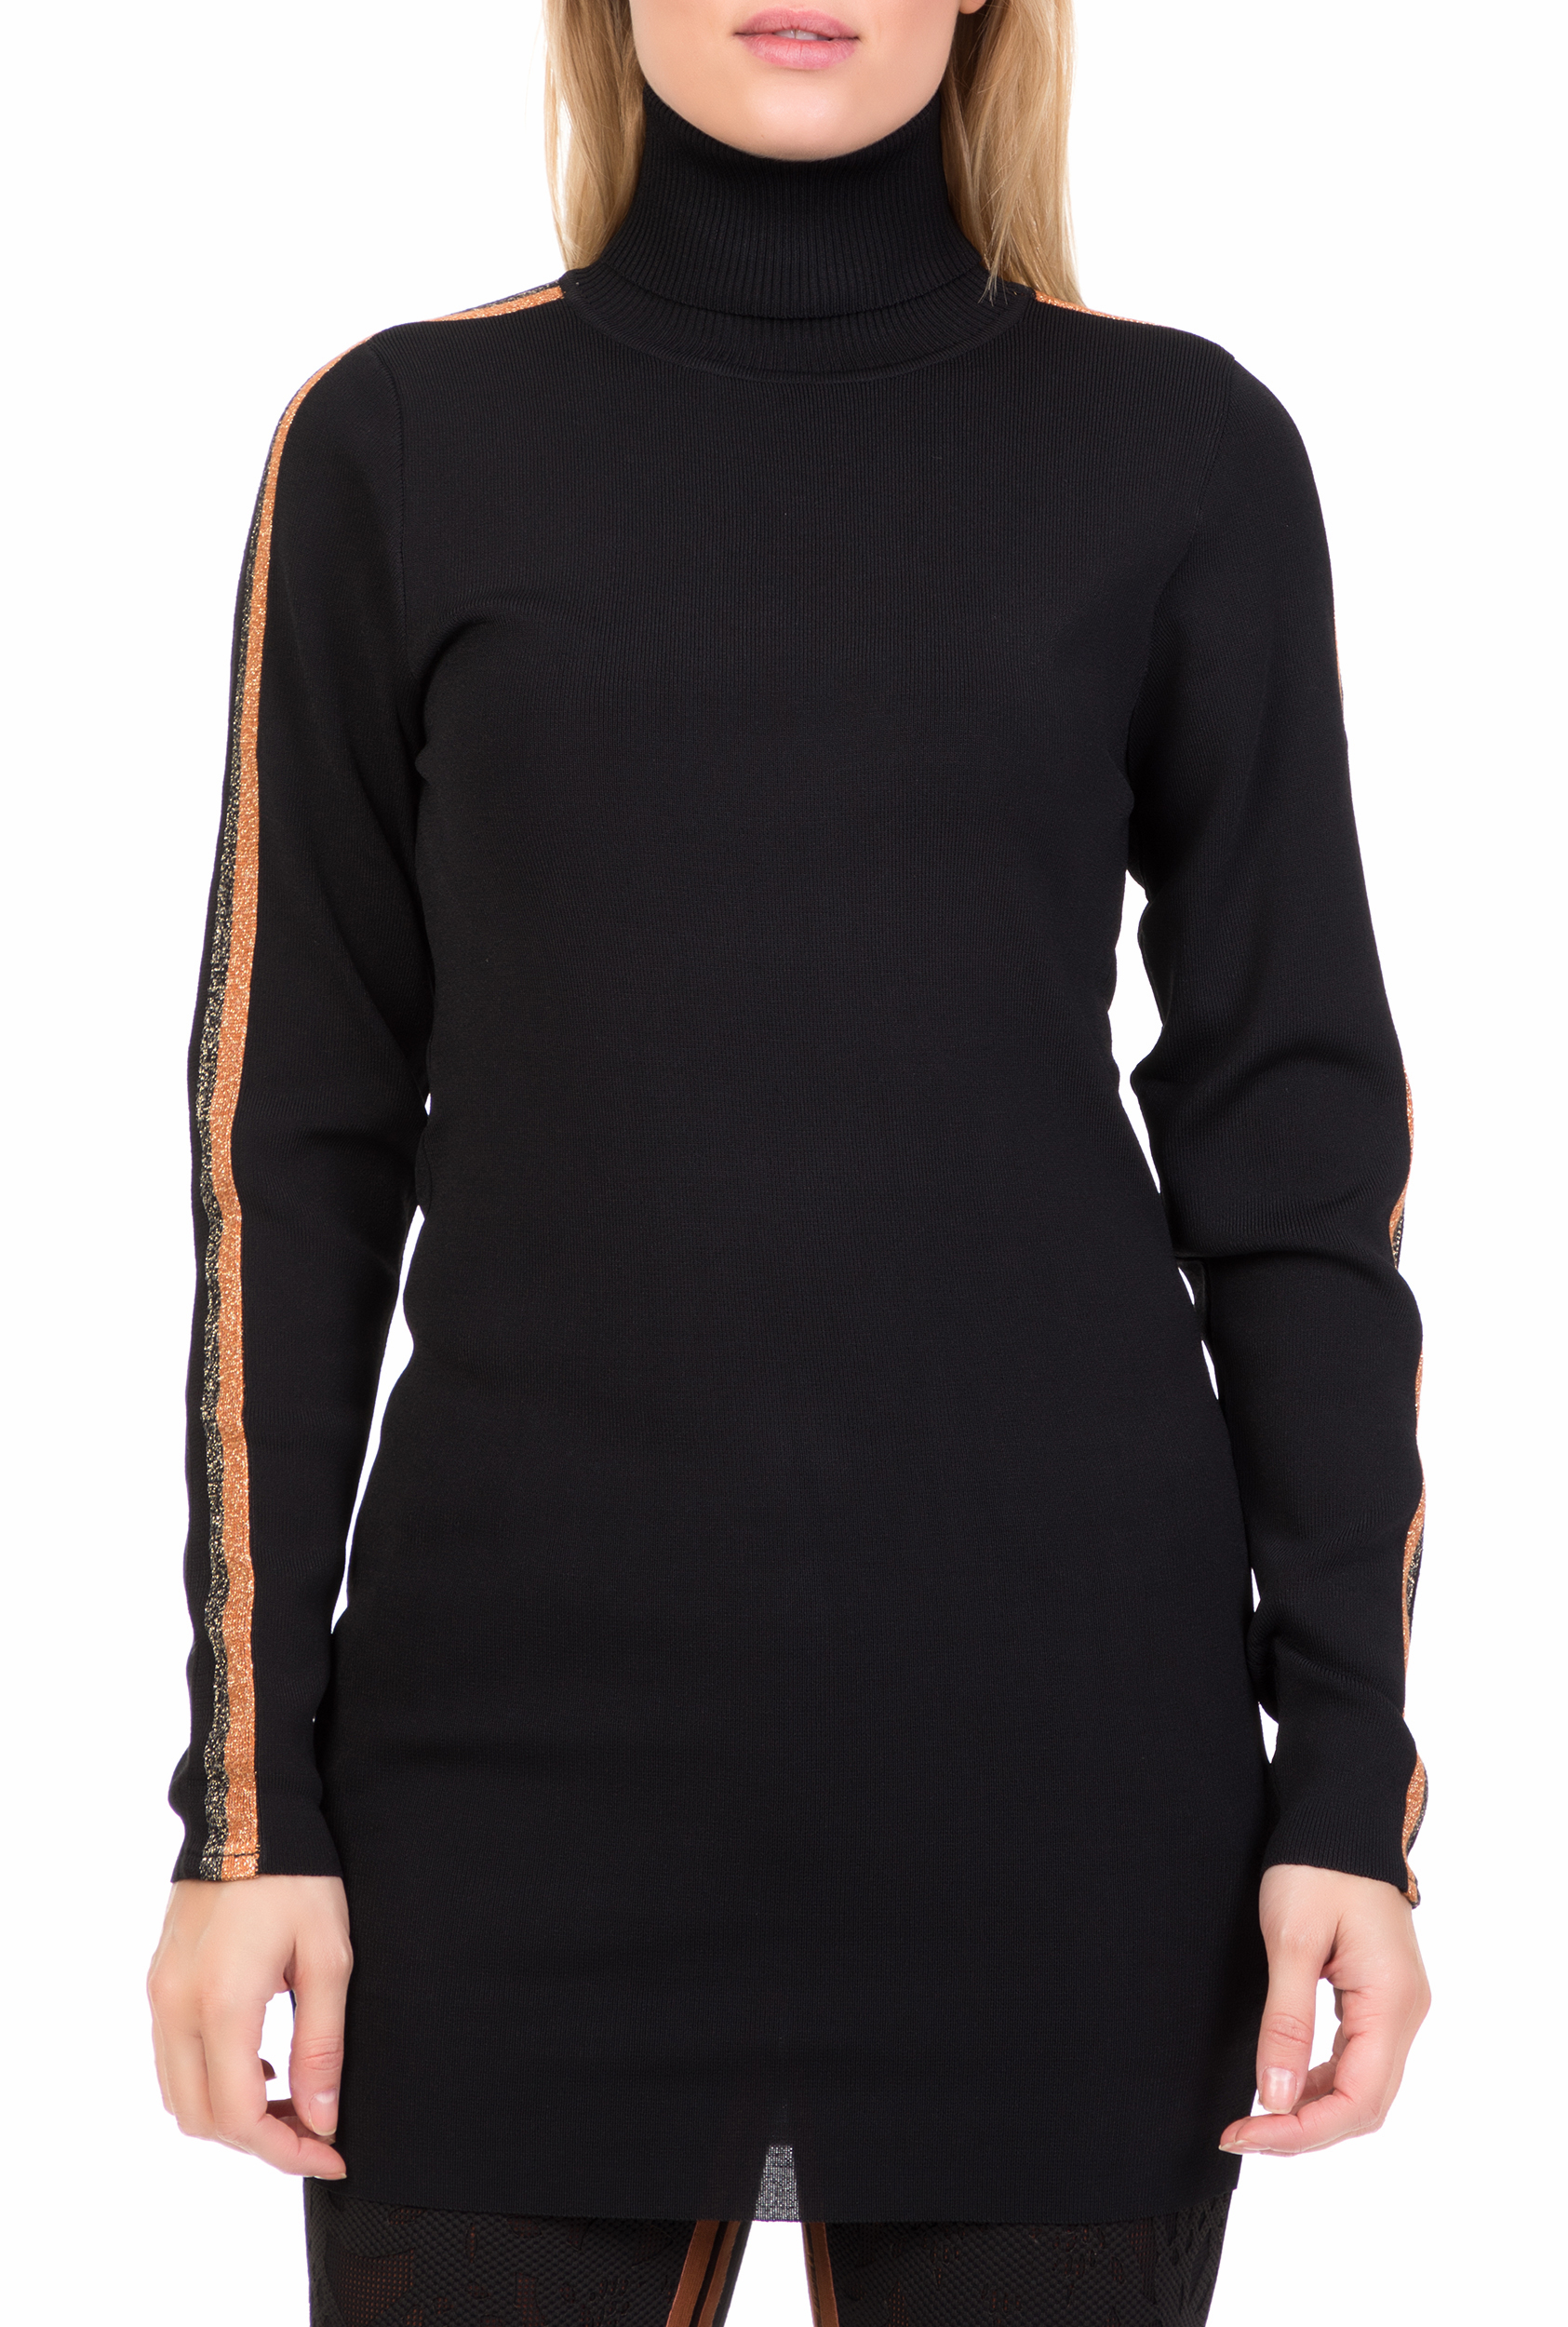 Γυναικεία/Ρούχα/Πλεκτά-Ζακέτες/Πουλόβερ NU - Γυναικεία μακρυμάνικη μπλούζα με ζιβάγκο NU μαύρη